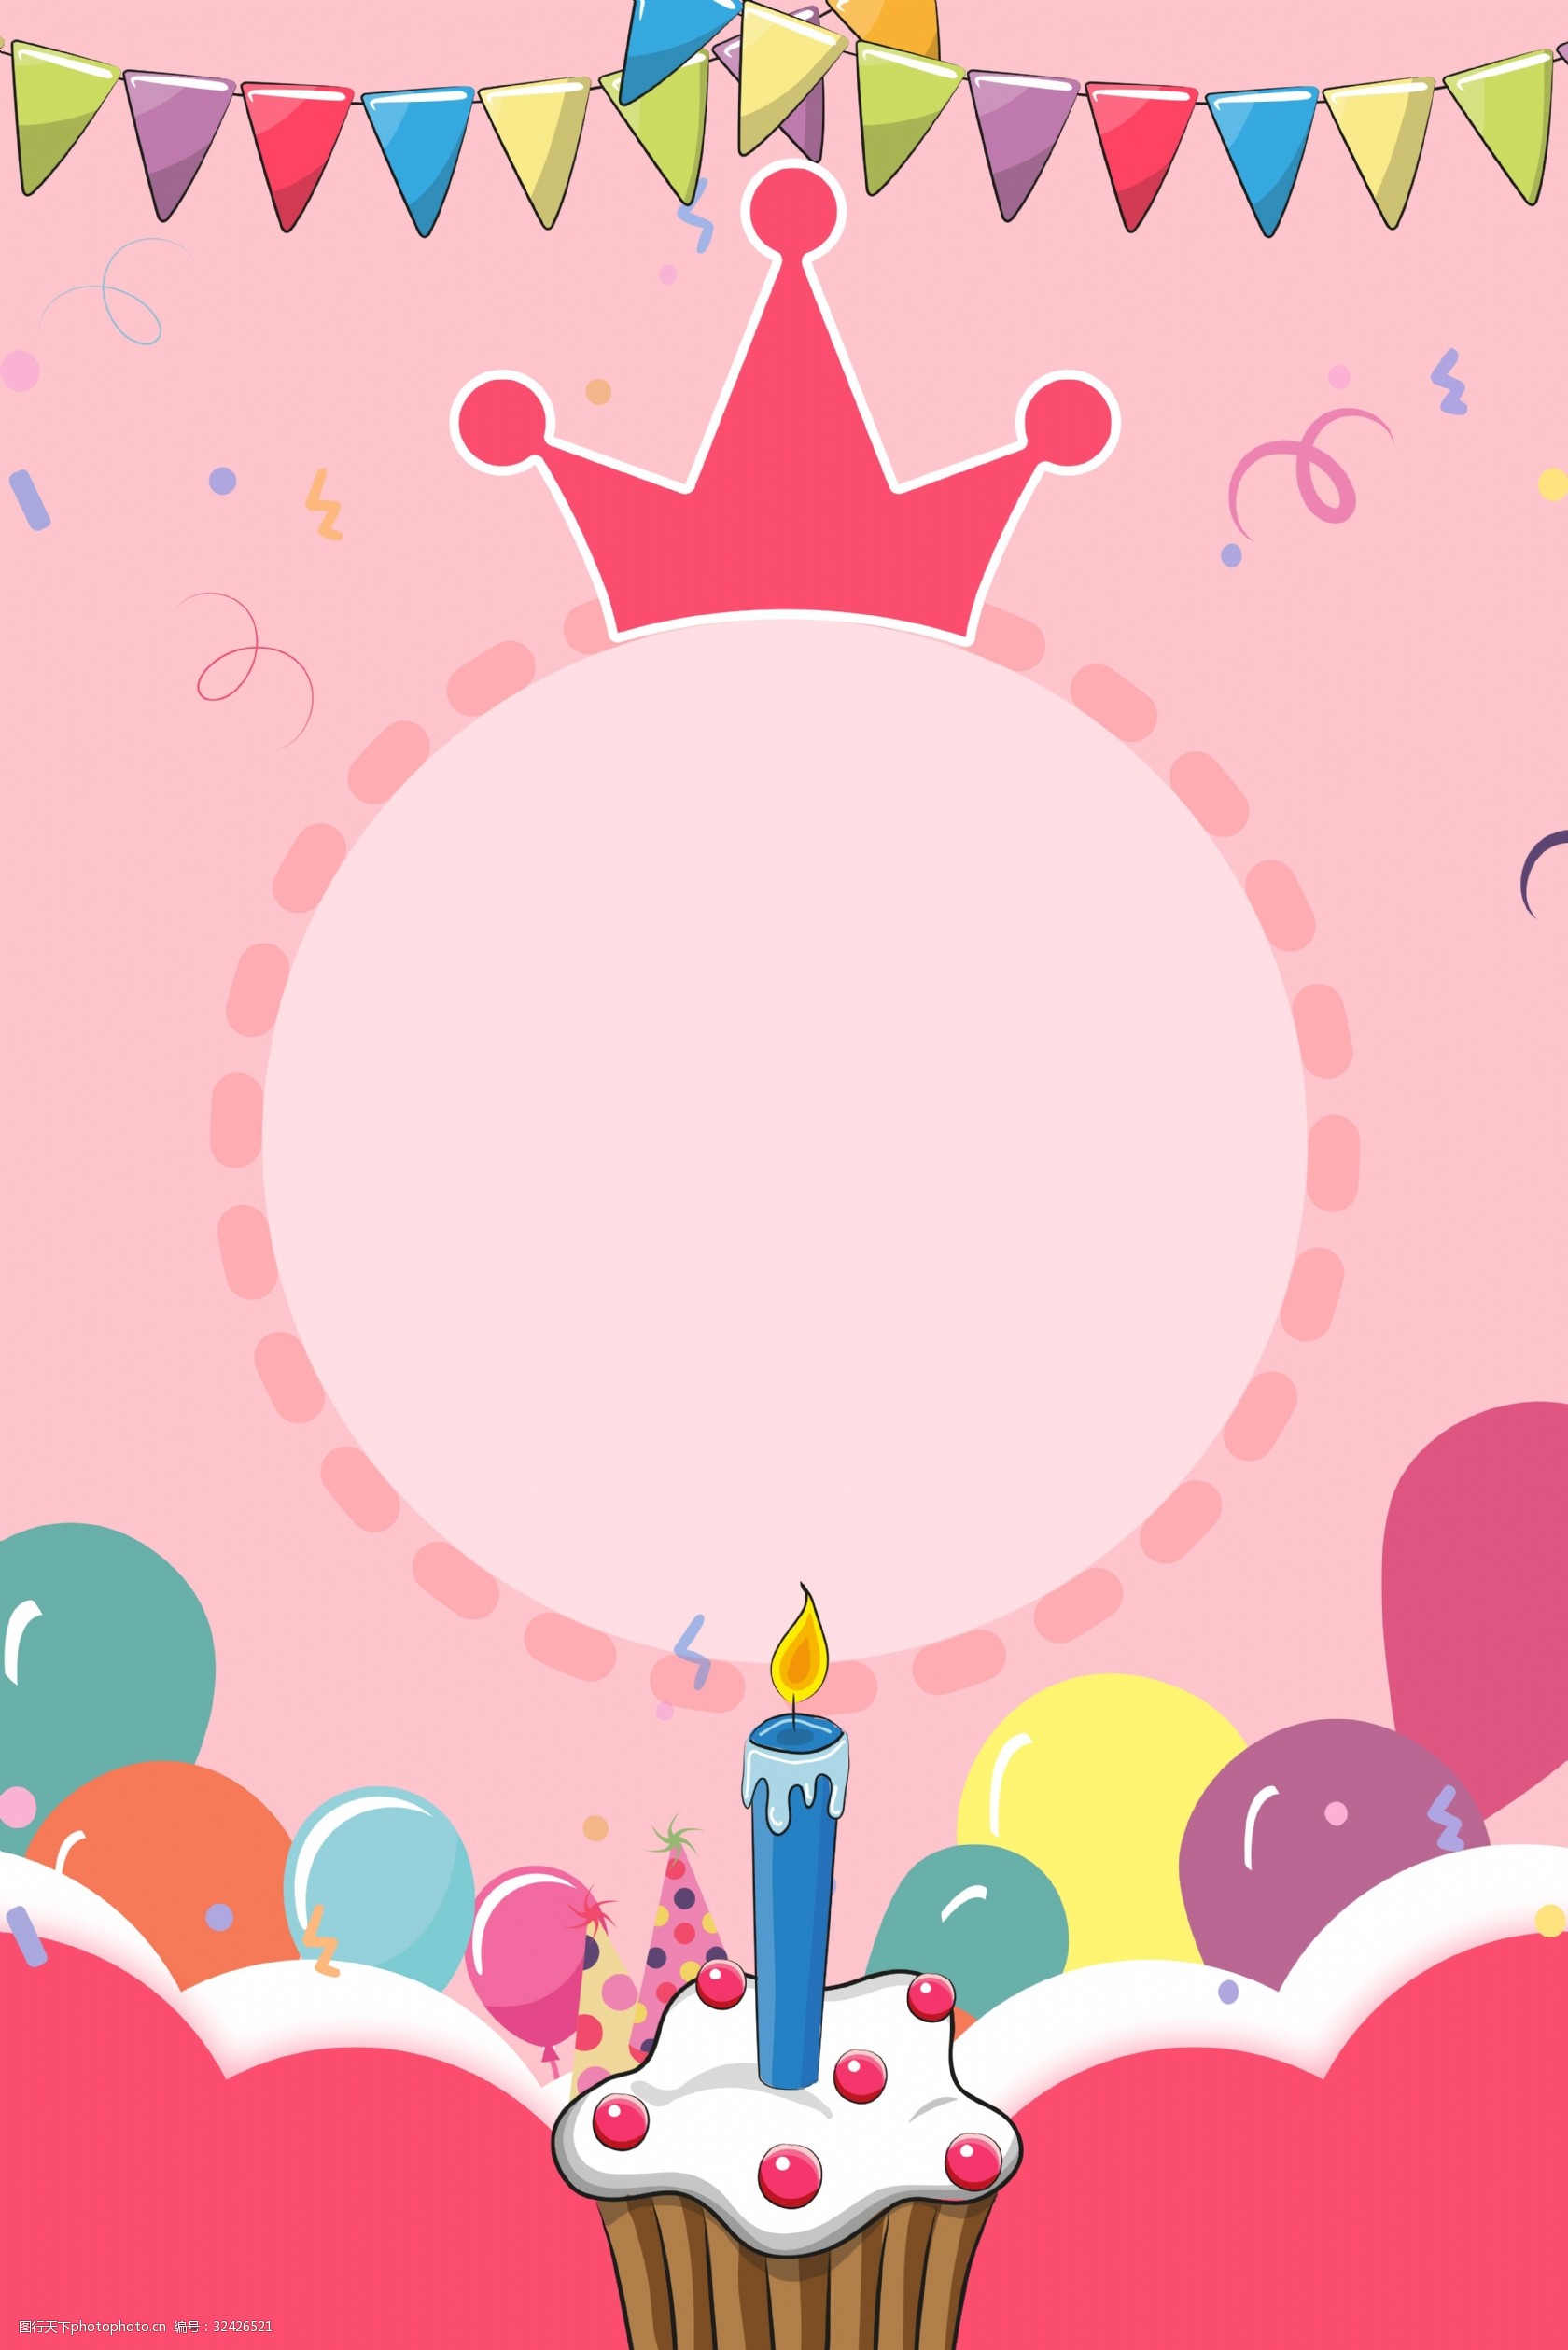 关键词:粉色卡通生日宴会背景图 生日 粉色 卡通 可爱 宴会 彩旗 气球